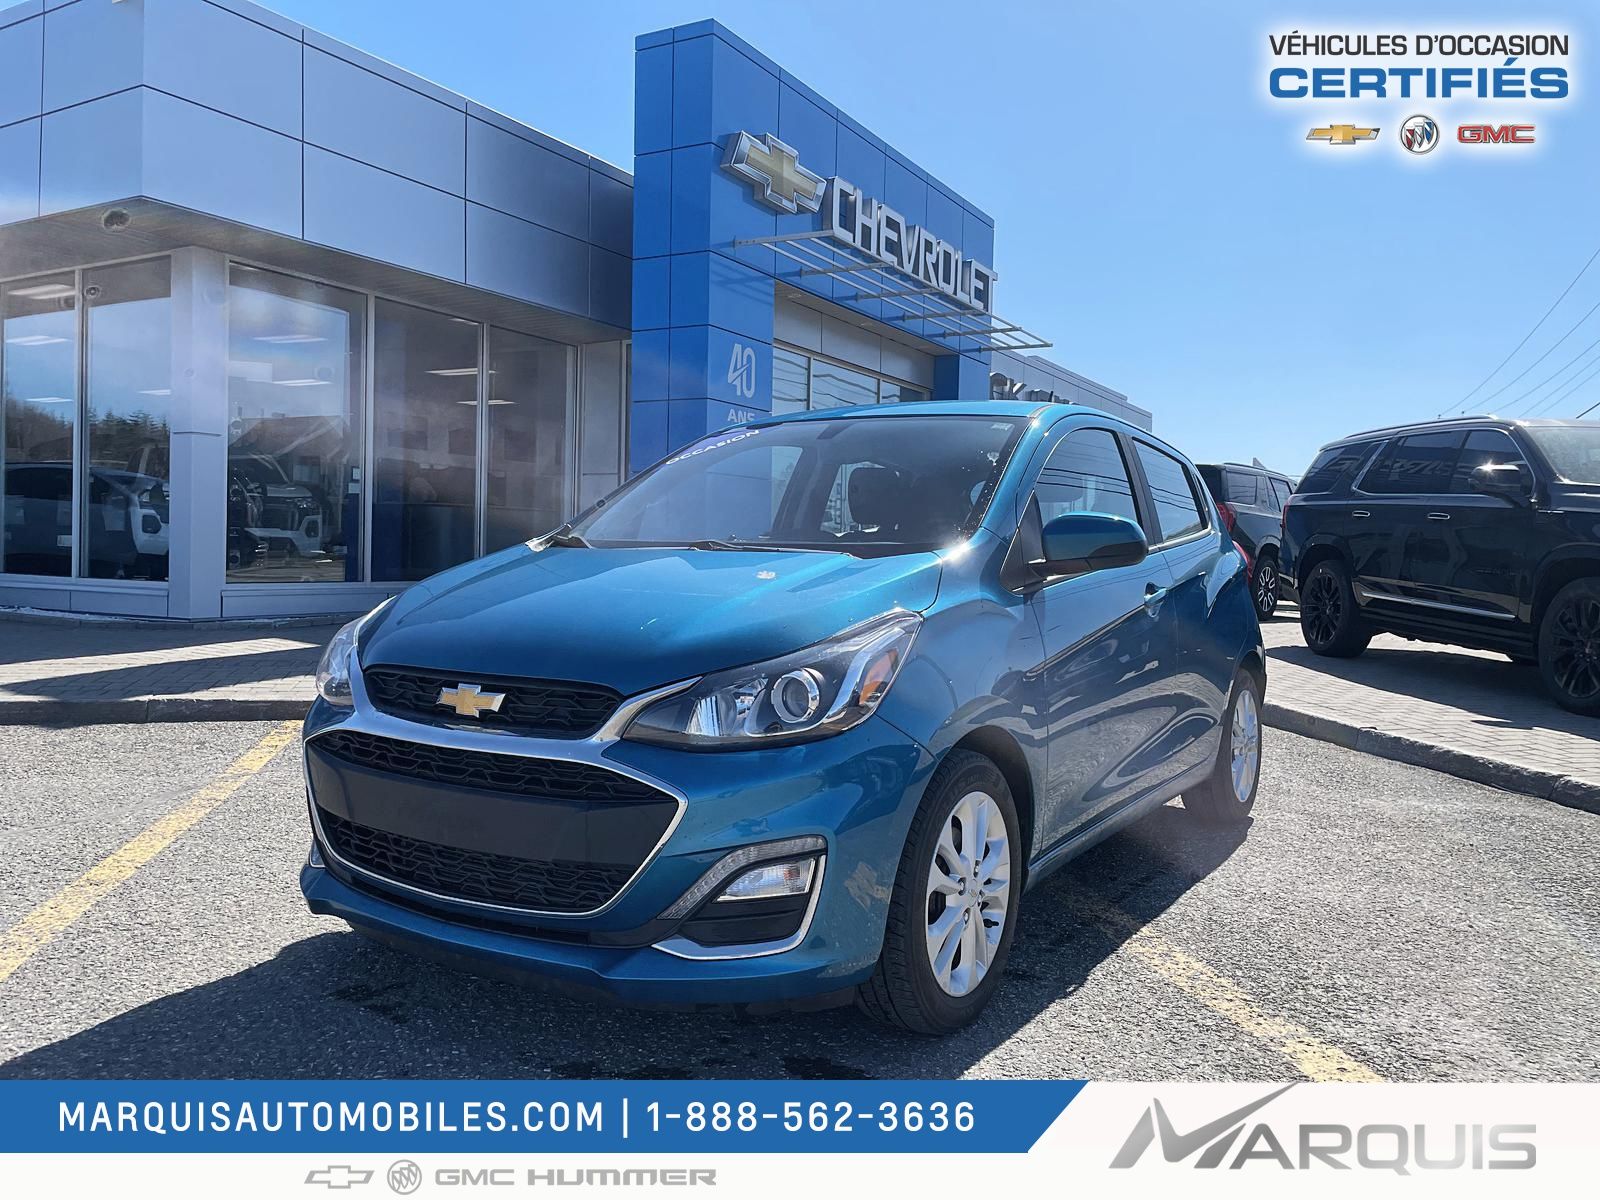 Marquis Automobiles Inc | 2019 Chevrolet Spark LT 1.4L HATCHBACK 